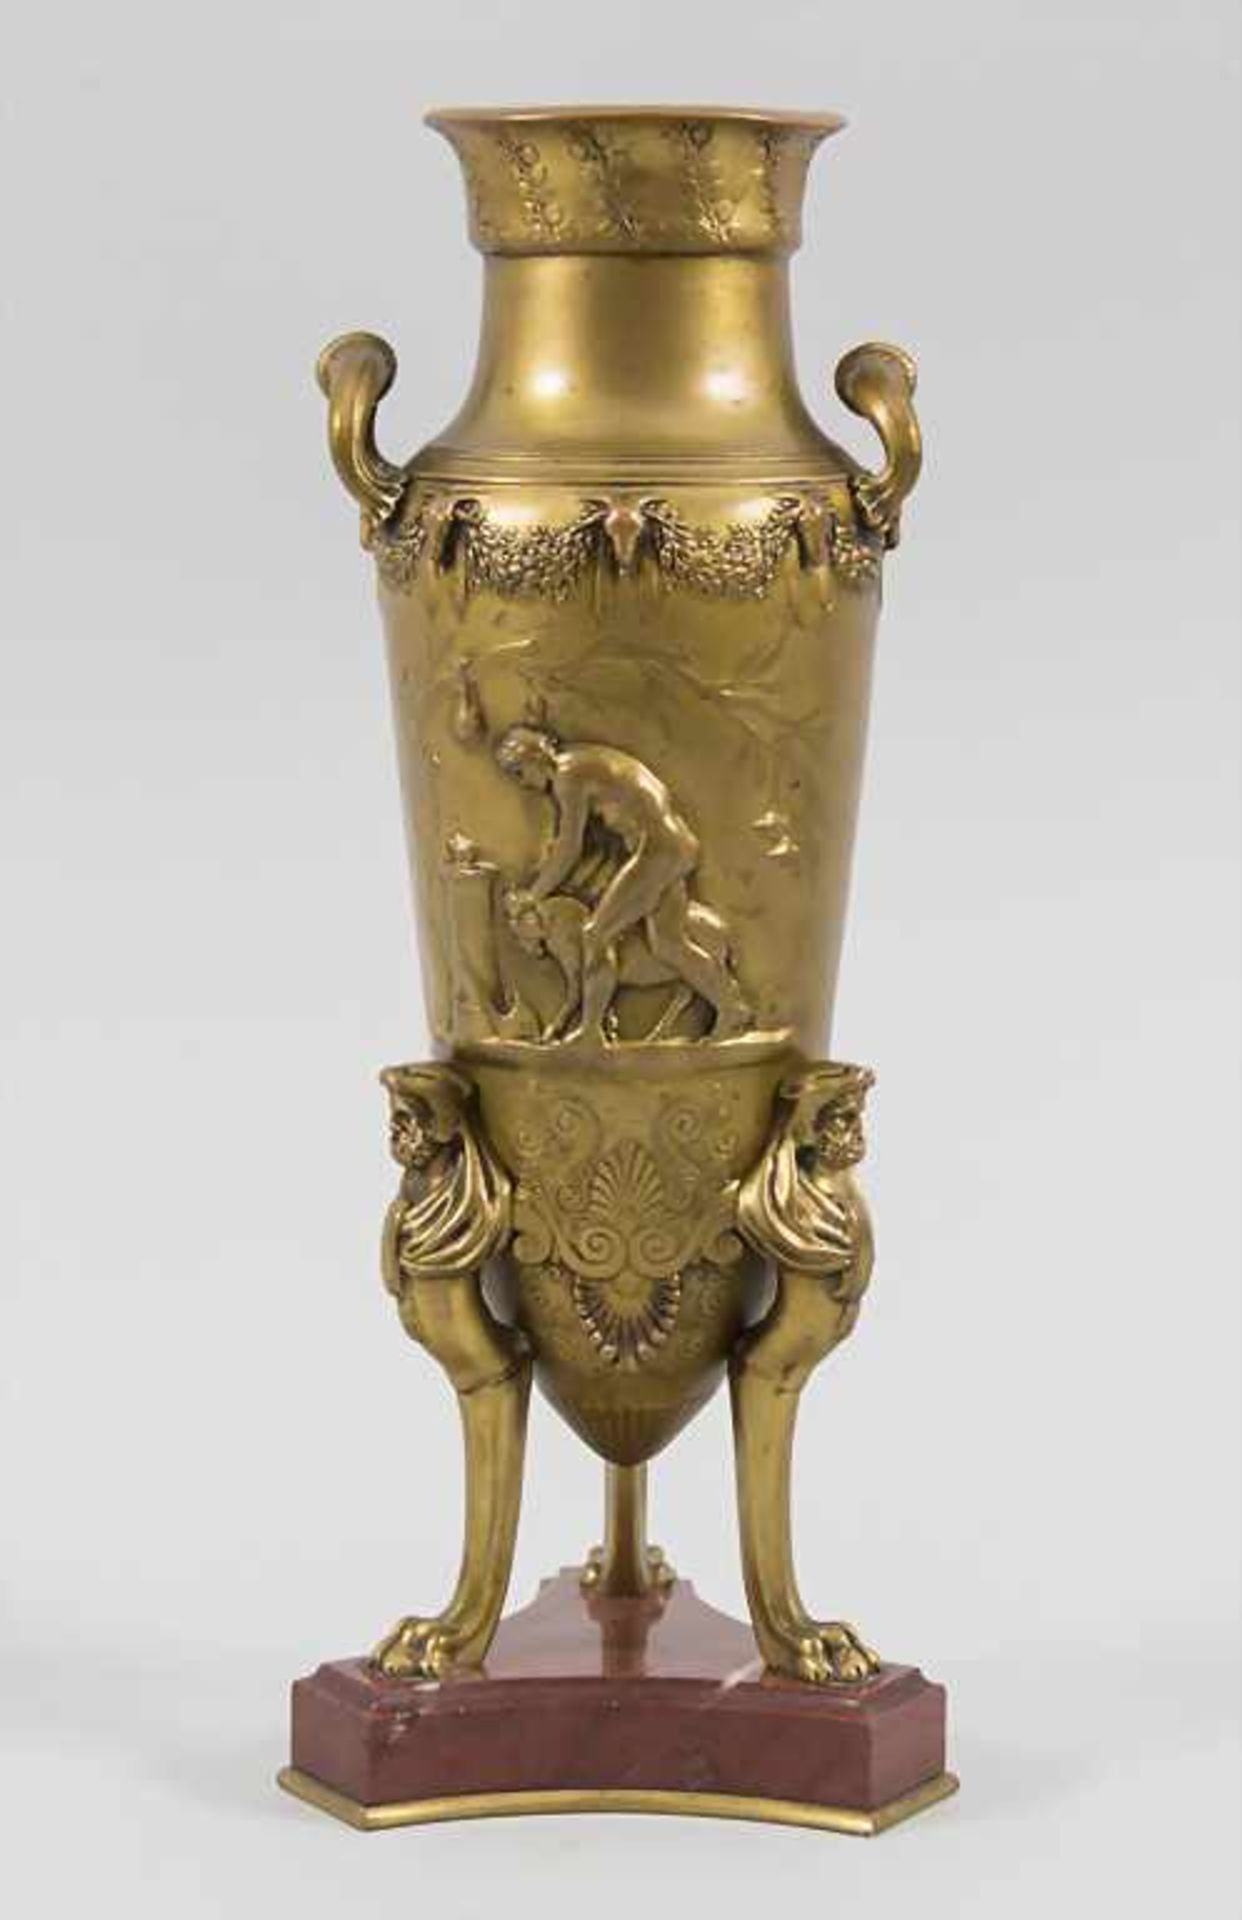 Ferdinand LEVILLAIN (1837-1905), 'Amphorenvase' / 'An amphora vase'